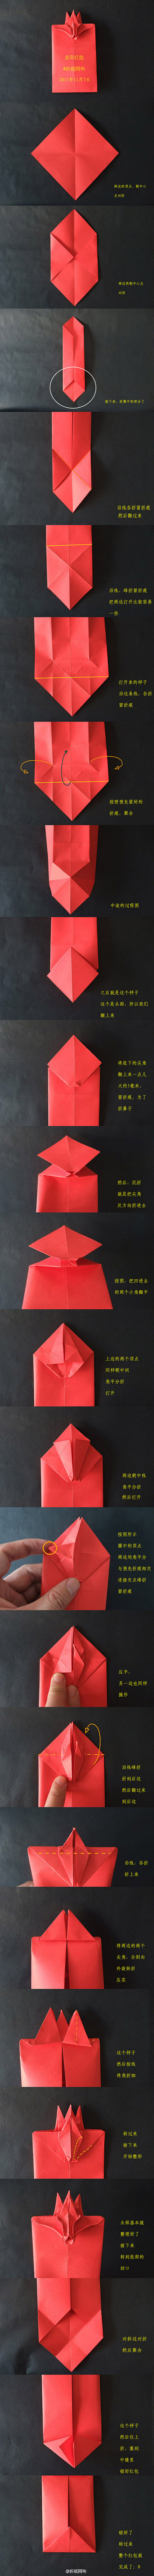 折纸红包~